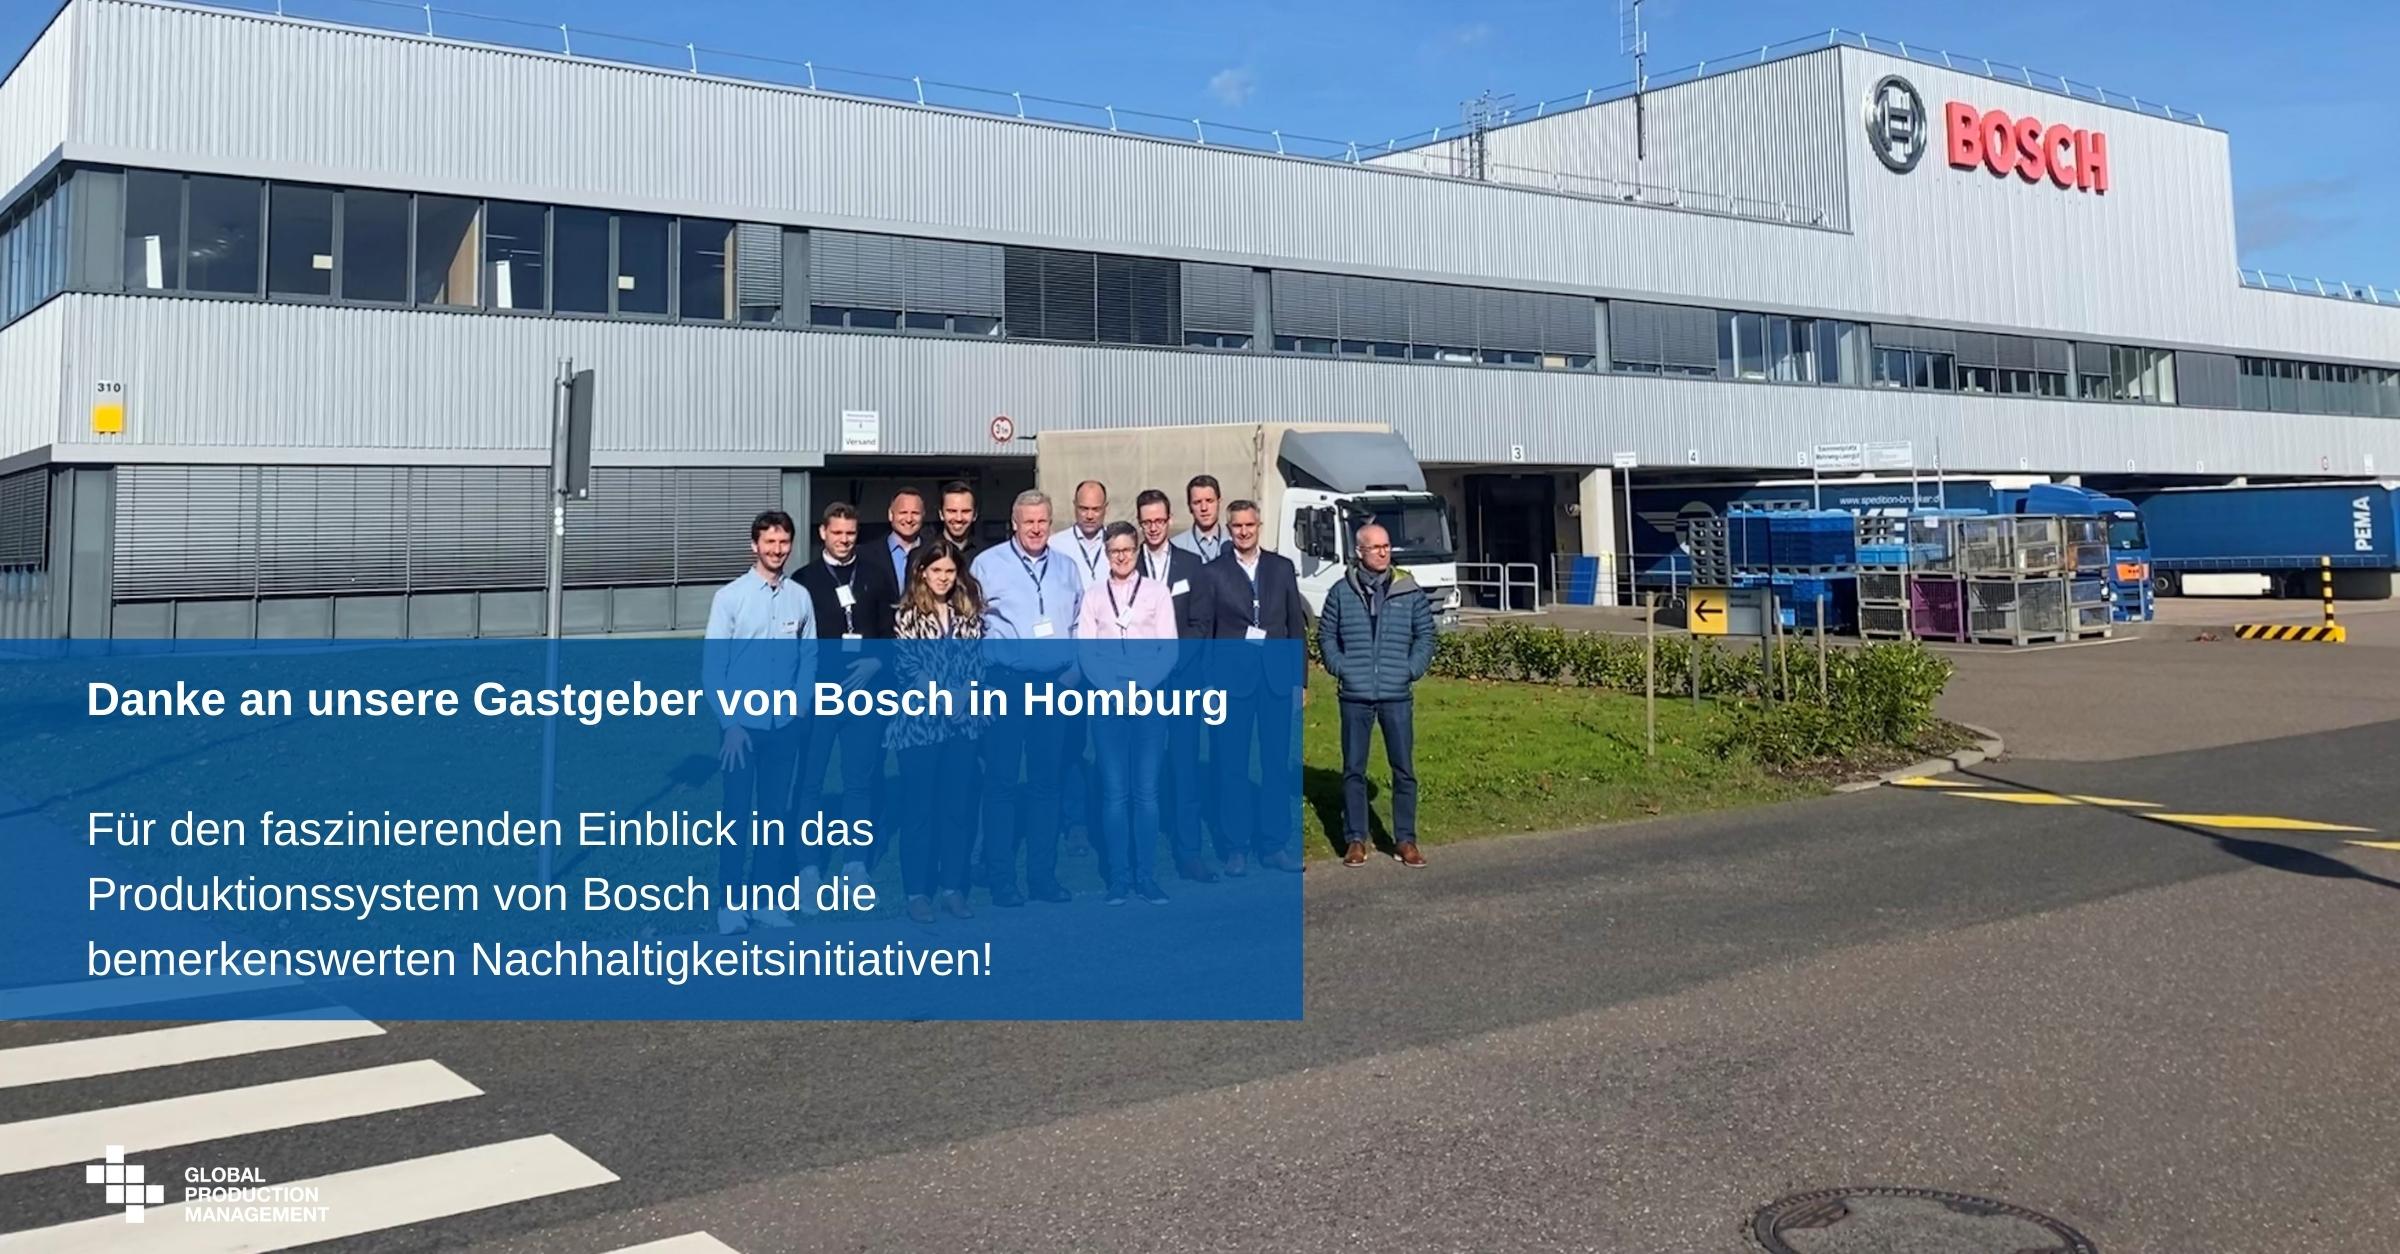 Danke-an-unsere-Gastgeber-von-Bosch-in-Homburg-Fuer-den-faszinierenden-Einblick-in-das-Produktionssystem-von-Bosch-und-die-bemerkenswerten-Nachhaltigkeitsinitiativen Nachhaltigkeit im Produktionssystem  